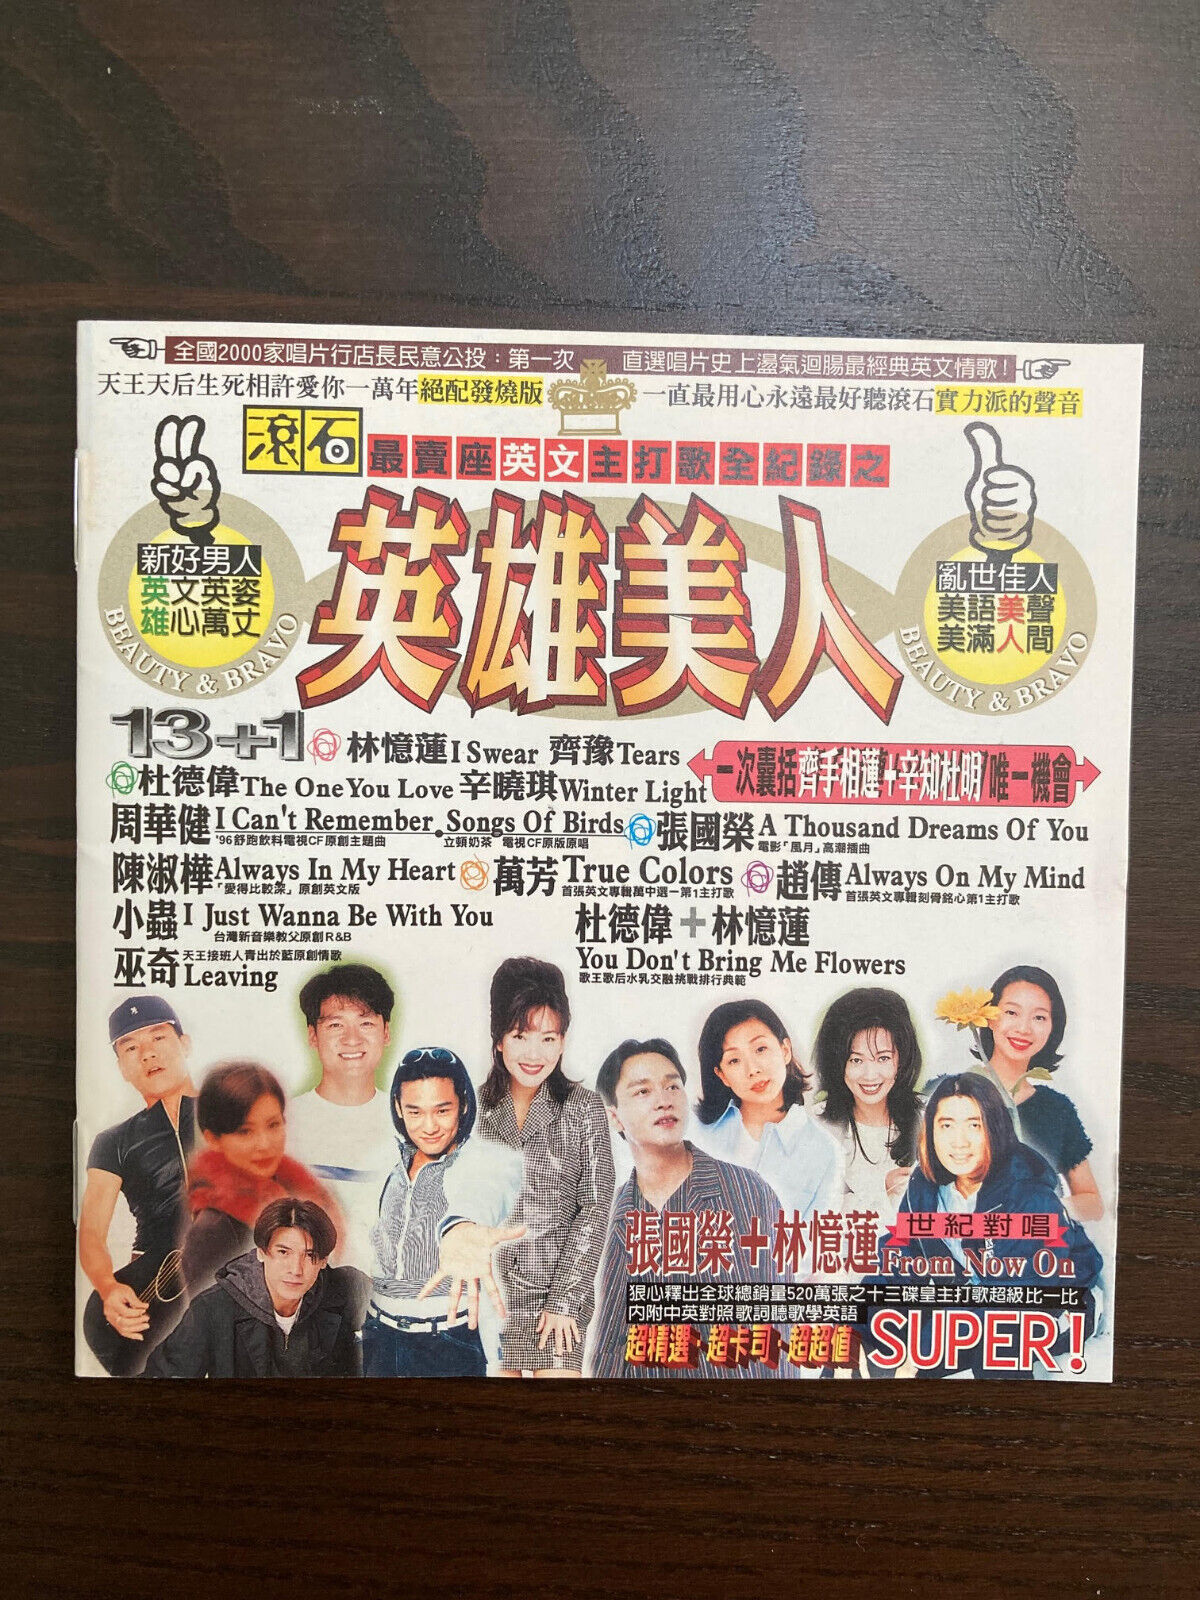 英雄美人 1996 Rock Records C Pop English Songs HK Chinese Taiwanese Singers CD Album